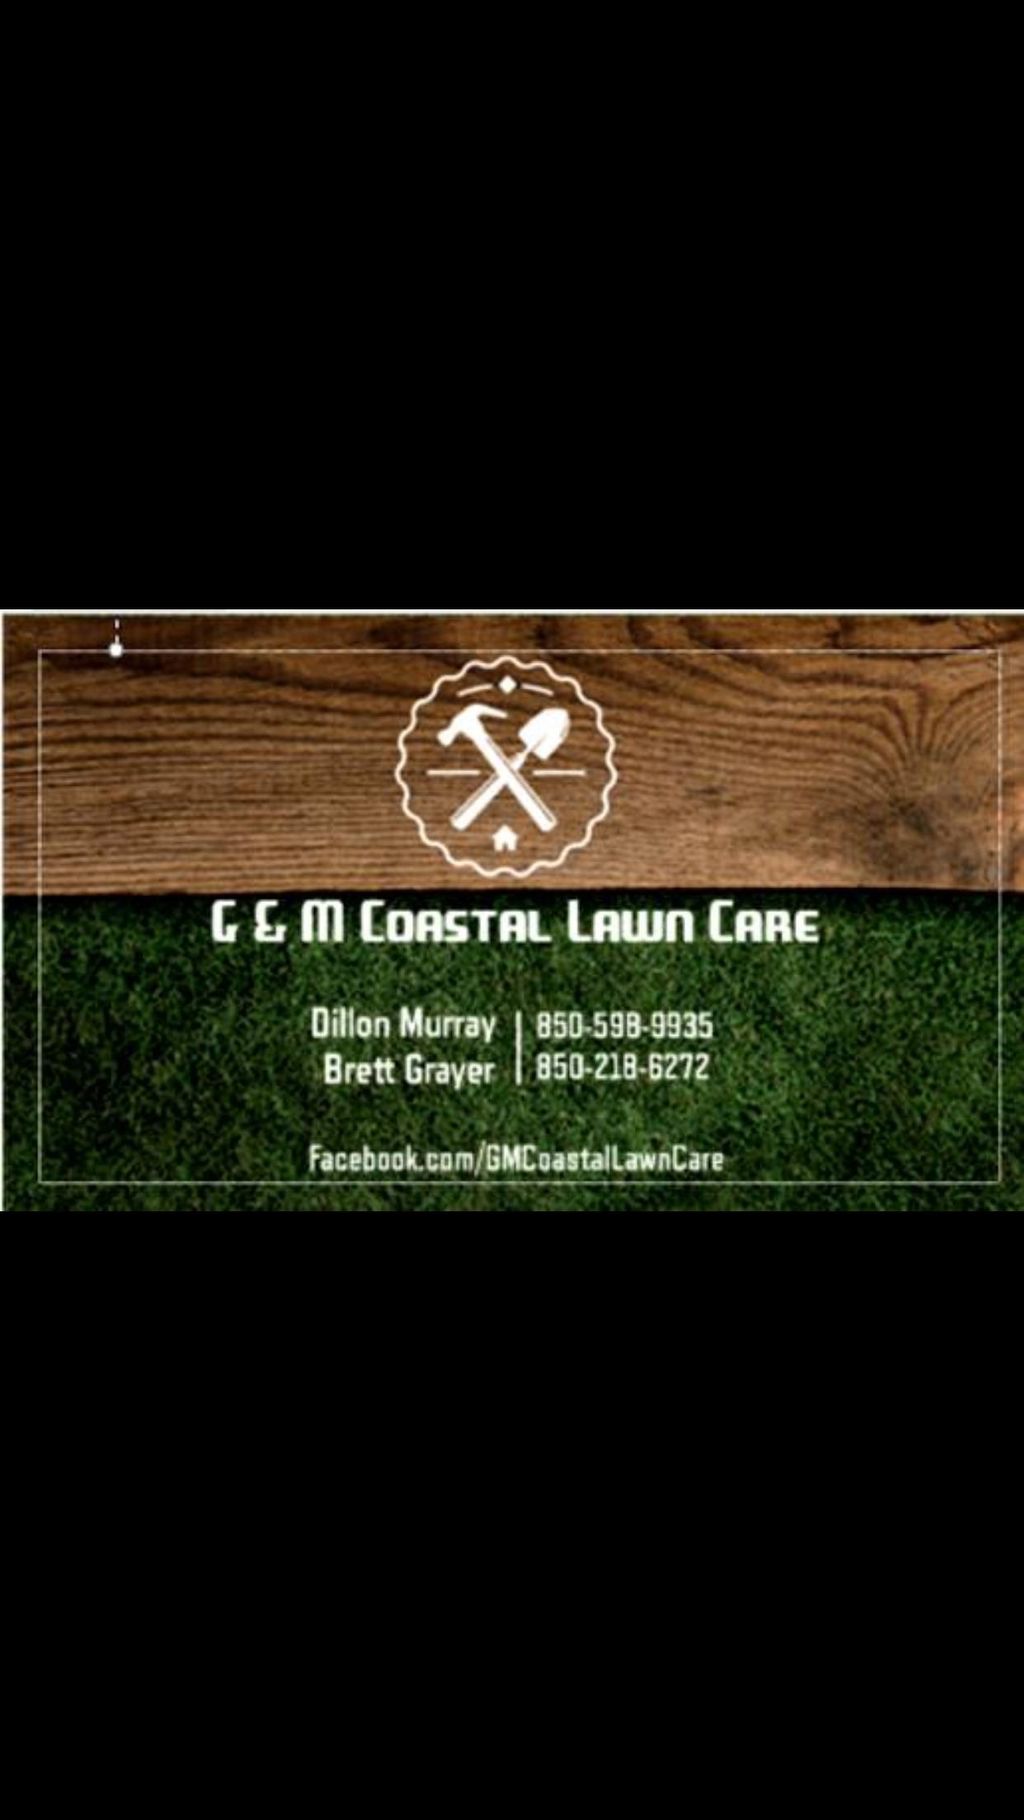 G&M coastal lawn care